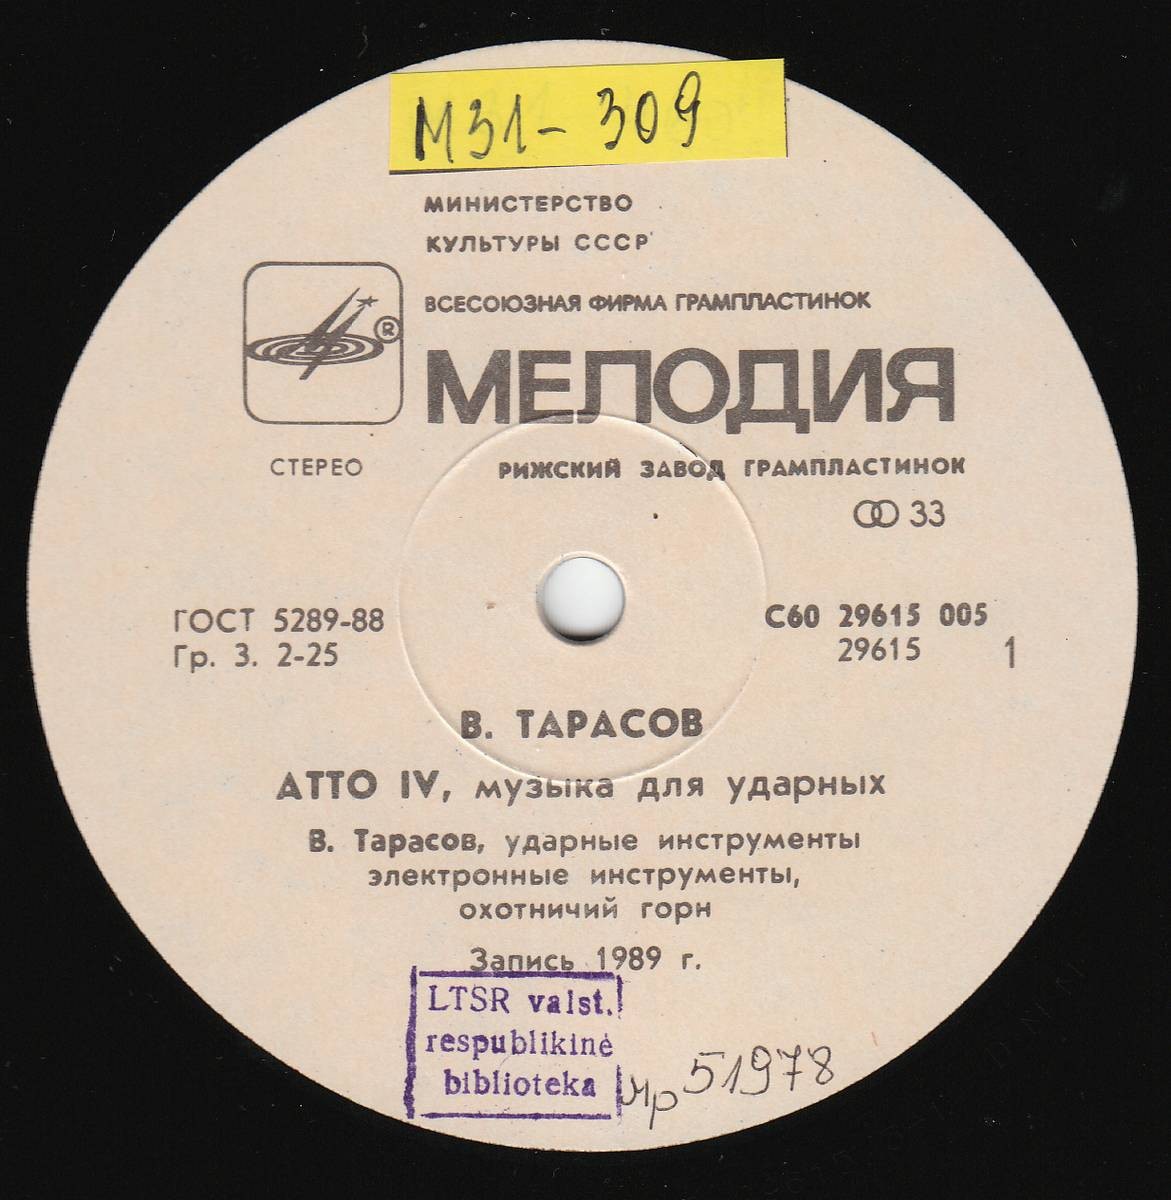 ТАРАСОВ Владимир «Atto IV», композиция в двух частях для ударных инструментов.